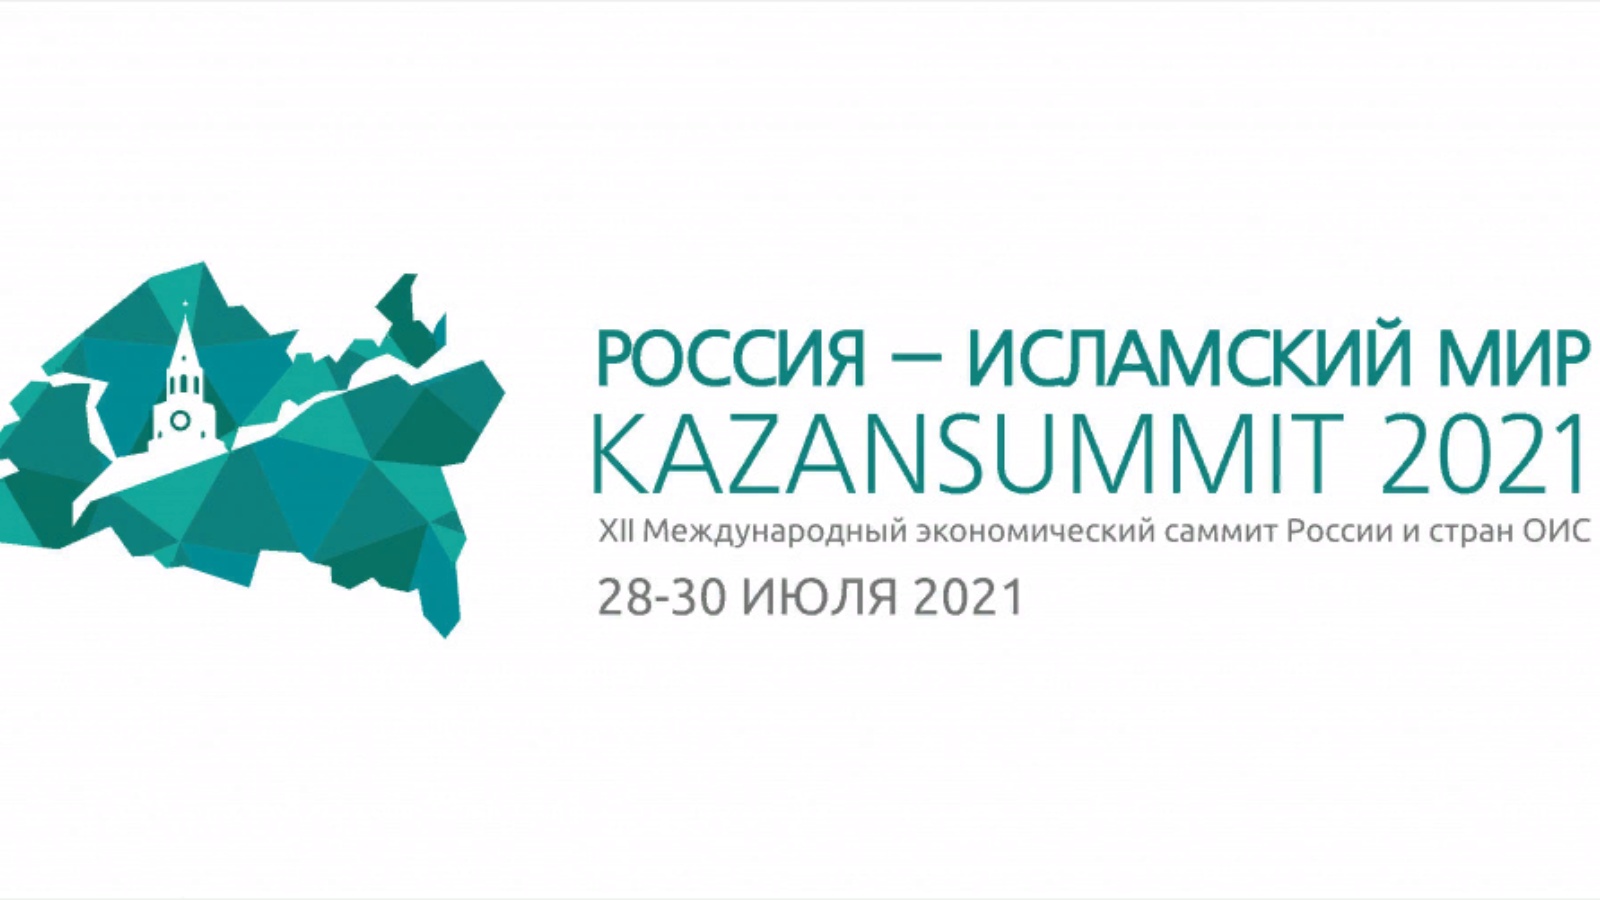 XII Международный экономический саммит «Россия - Исламский мир: KazanSummit 2021»